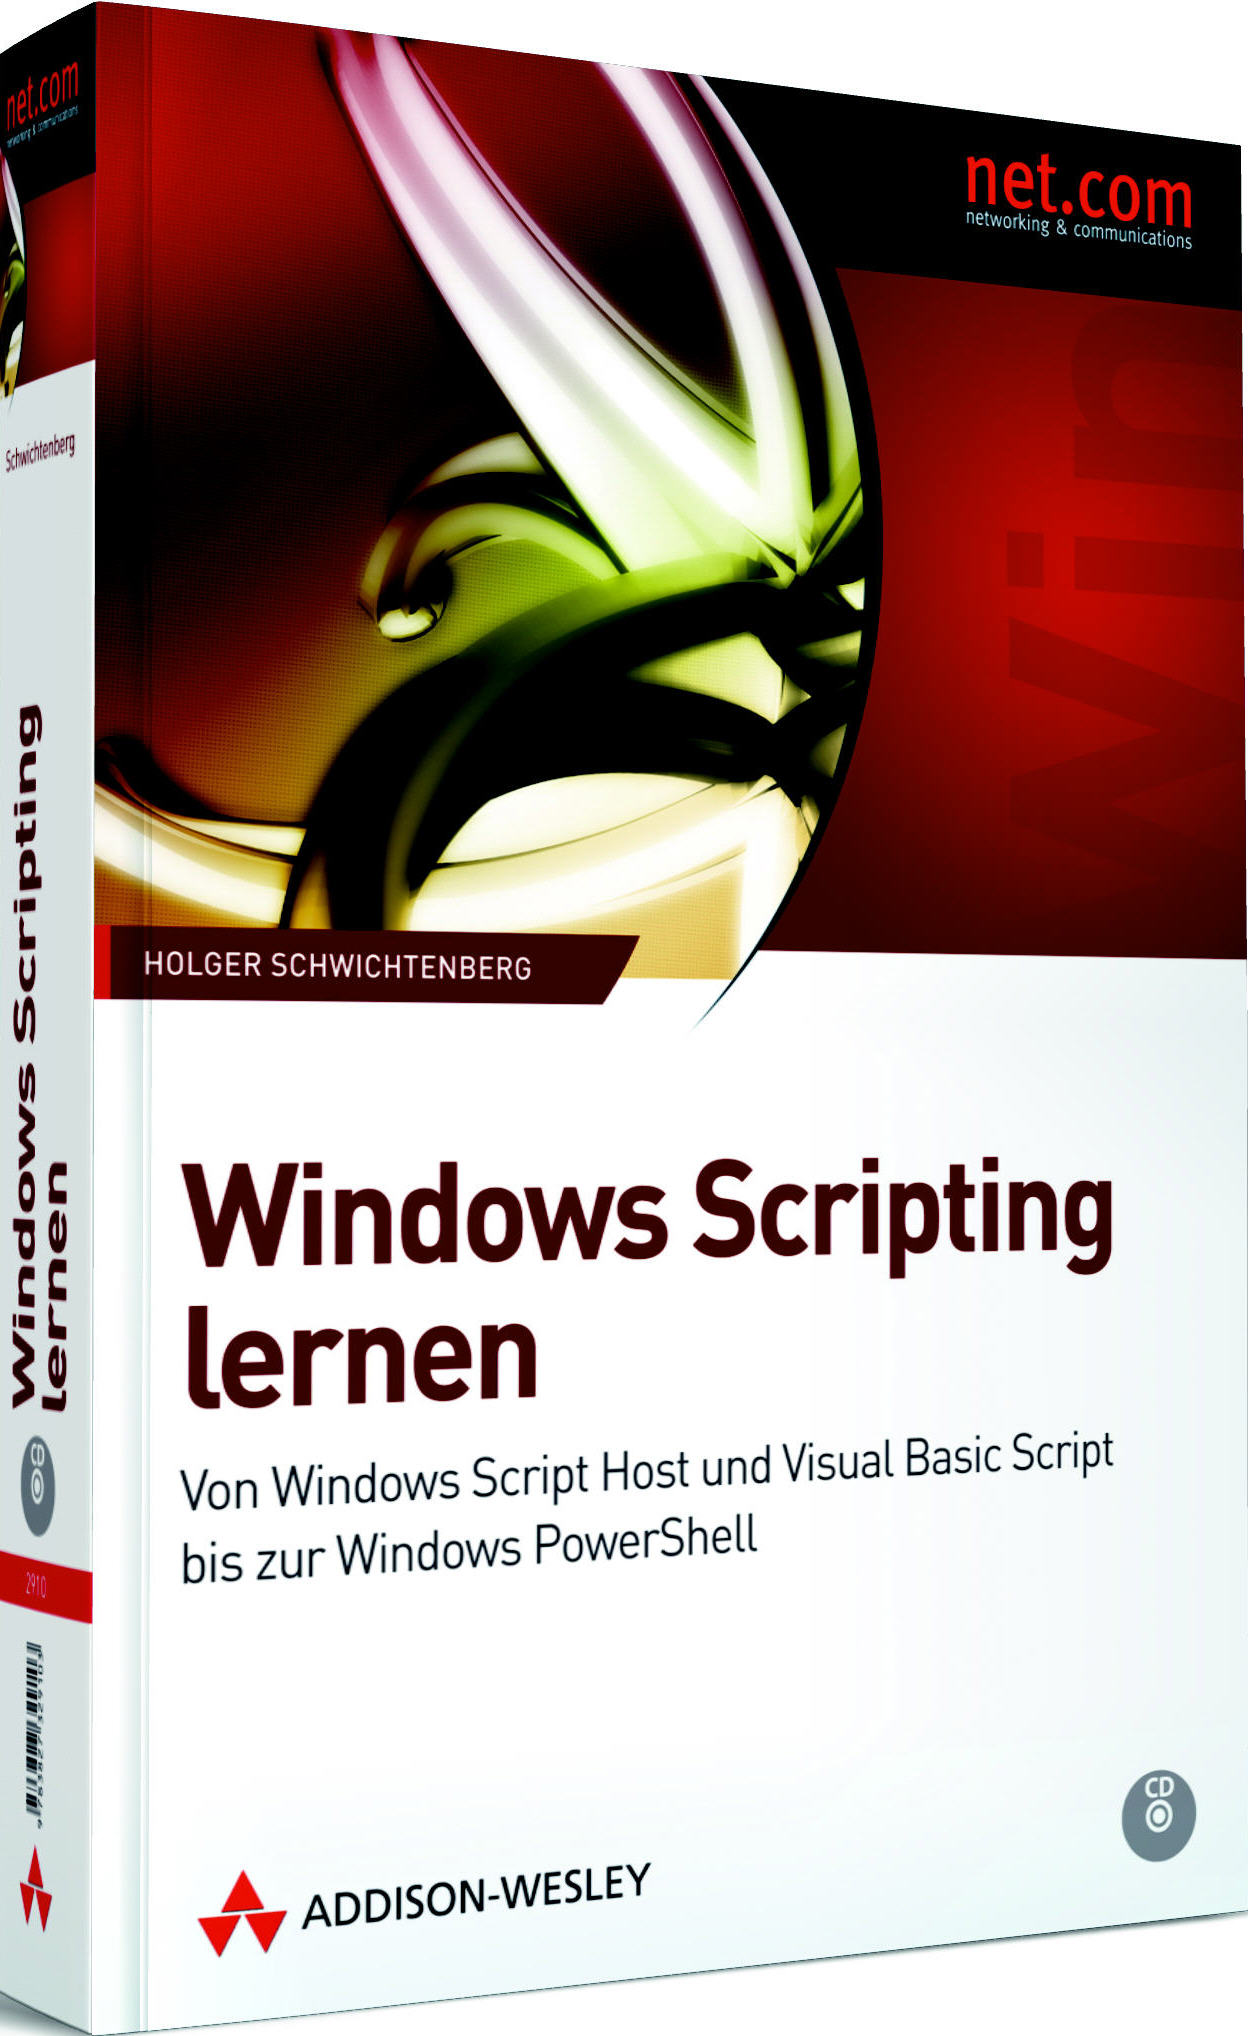 Windows Scripting Lernen (Addison-Wesley, 2009)